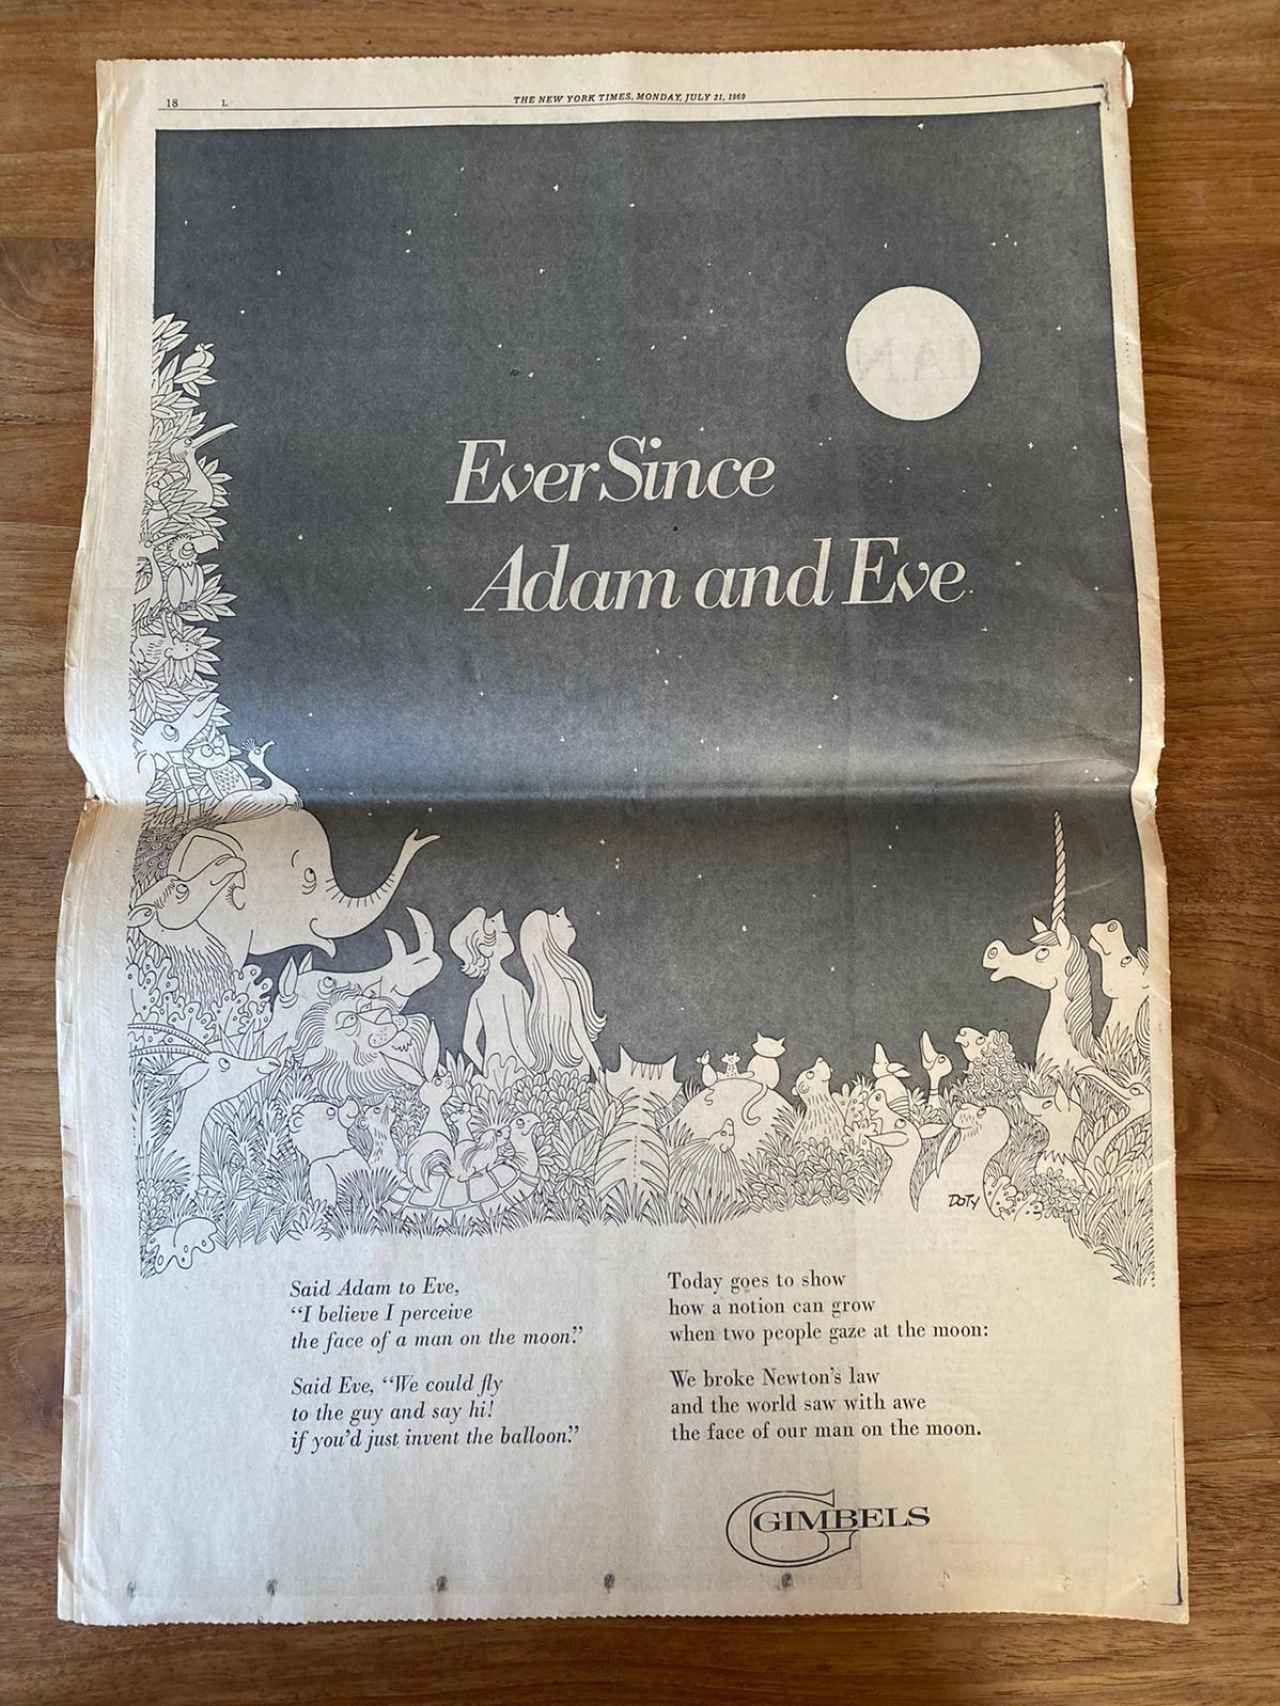 La contraportada de aquel ejemplar del 'New York Times' de 1969.